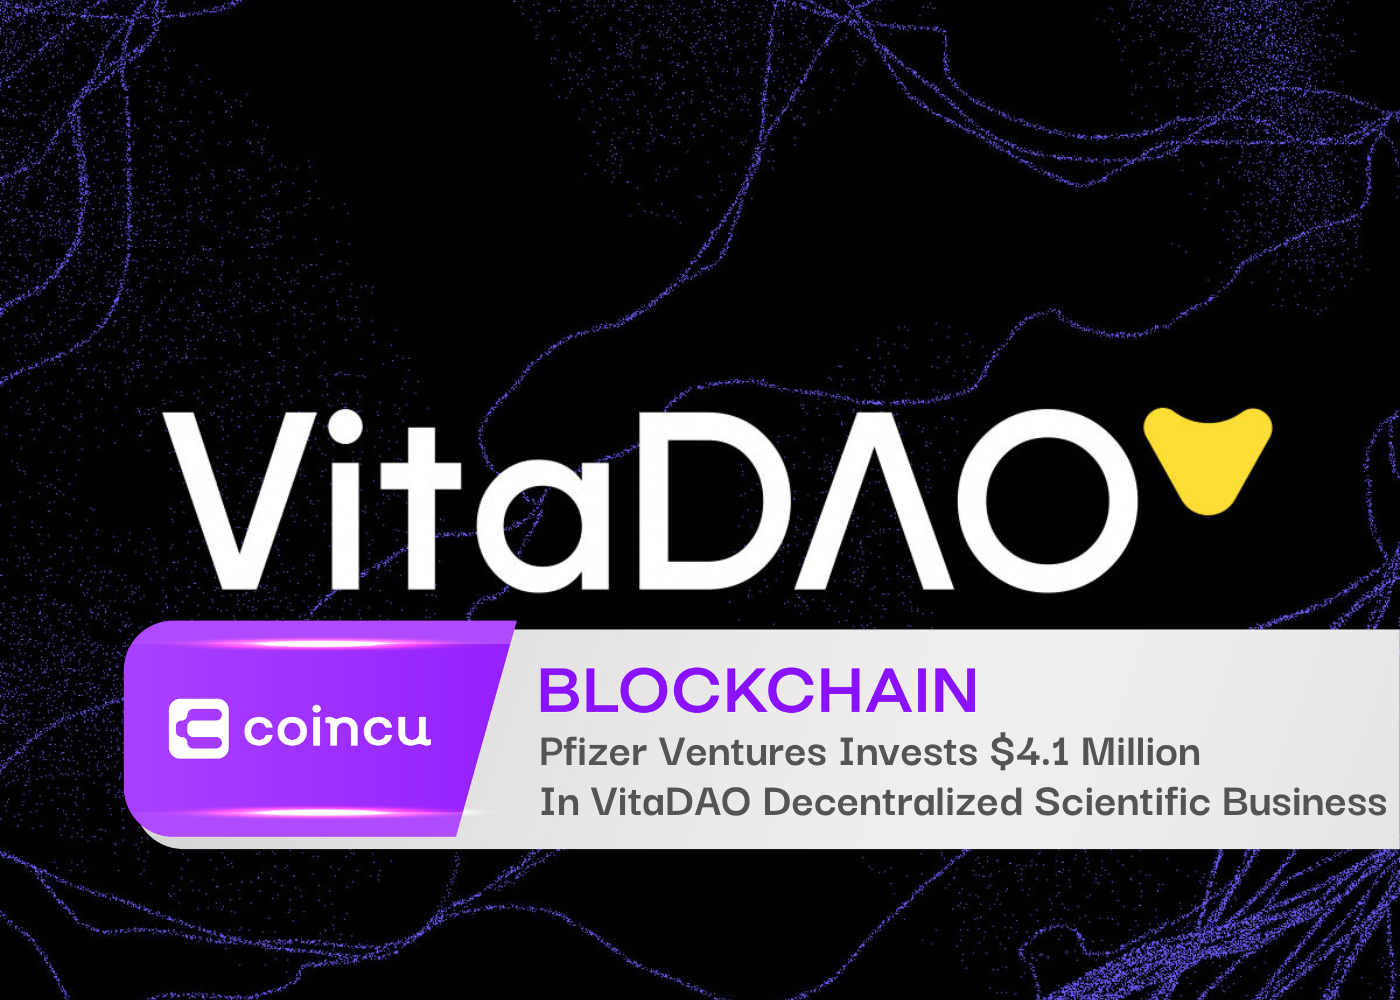 Pfizer Ventures Invests 4.1 Million In VitaDAO